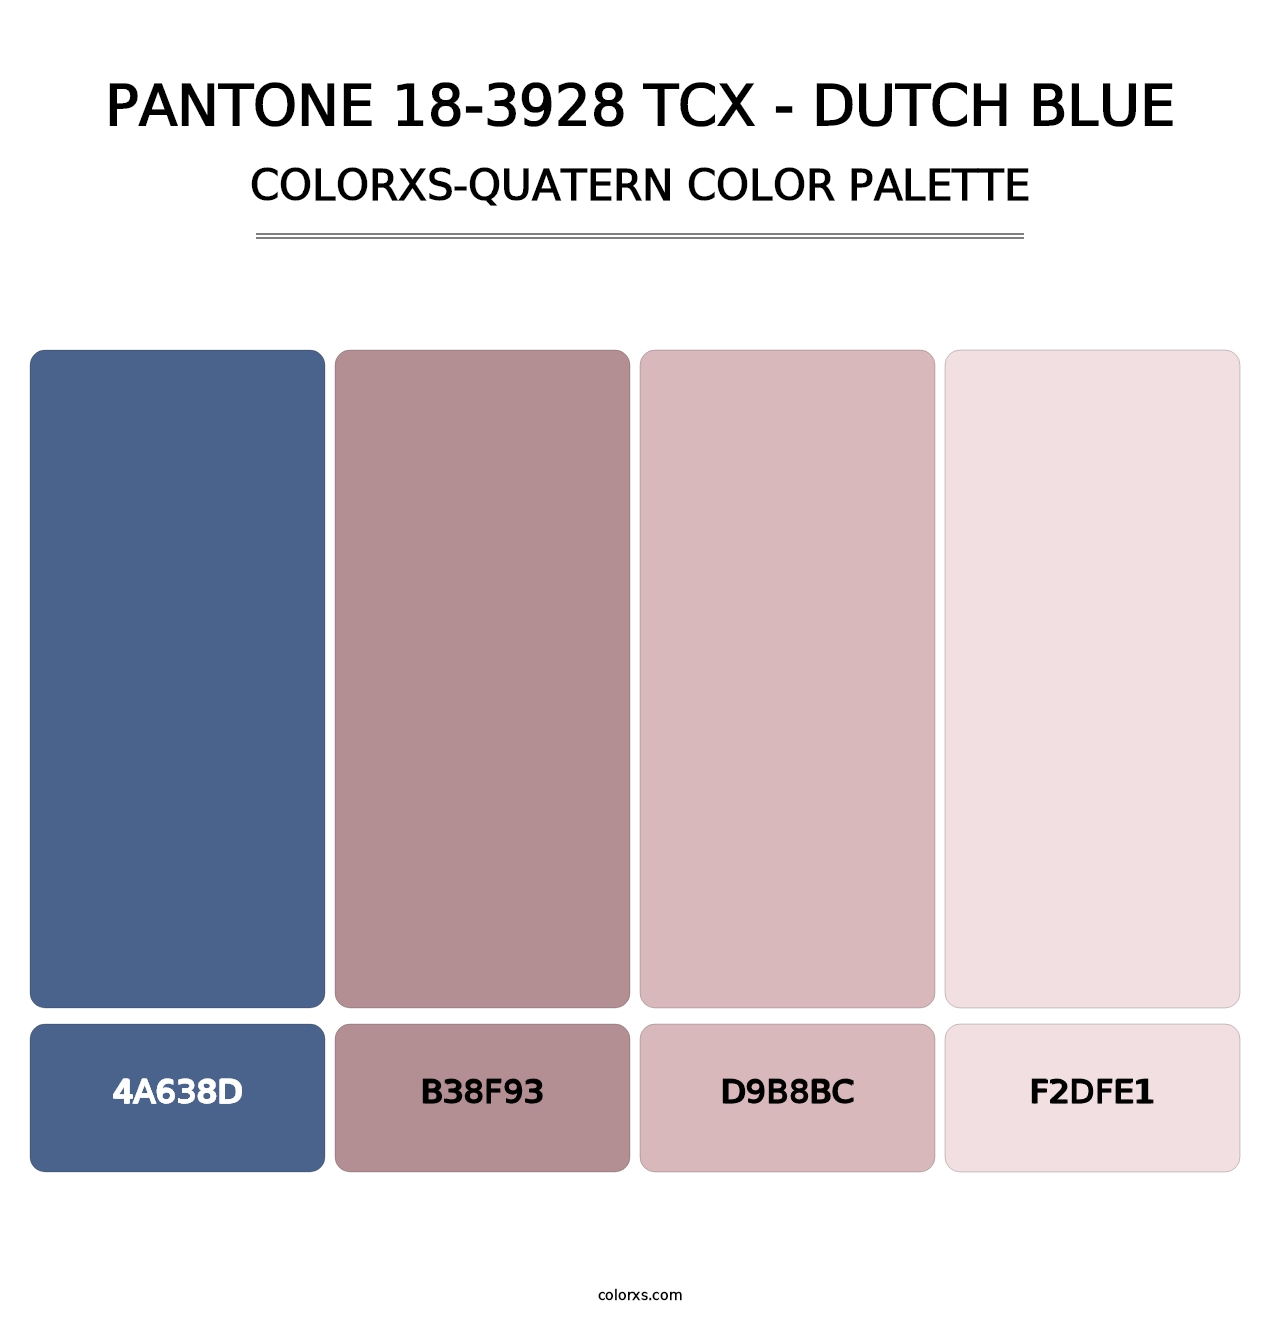 PANTONE 18-3928 TCX - Dutch Blue - Colorxs Quatern Palette